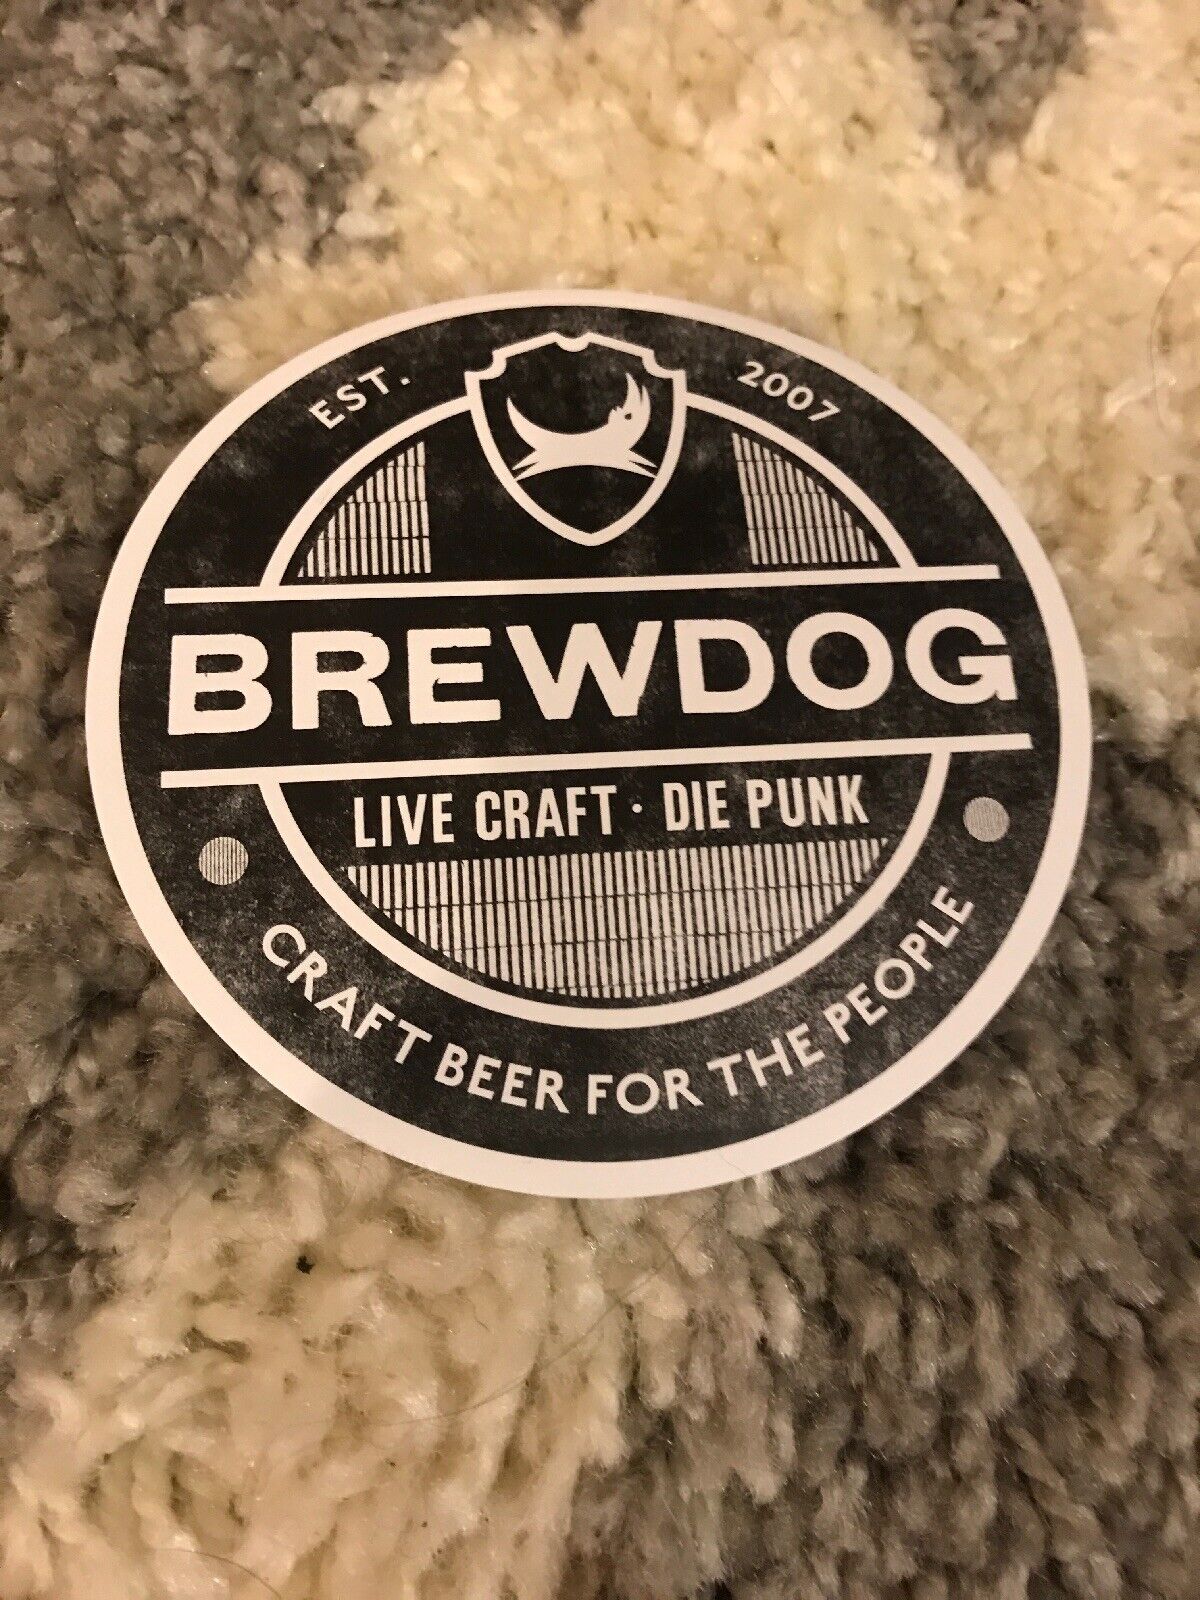 2 BREWDOG BREW DOG Black & White Hardcore Punk STICKER DECAL craft beer brewery